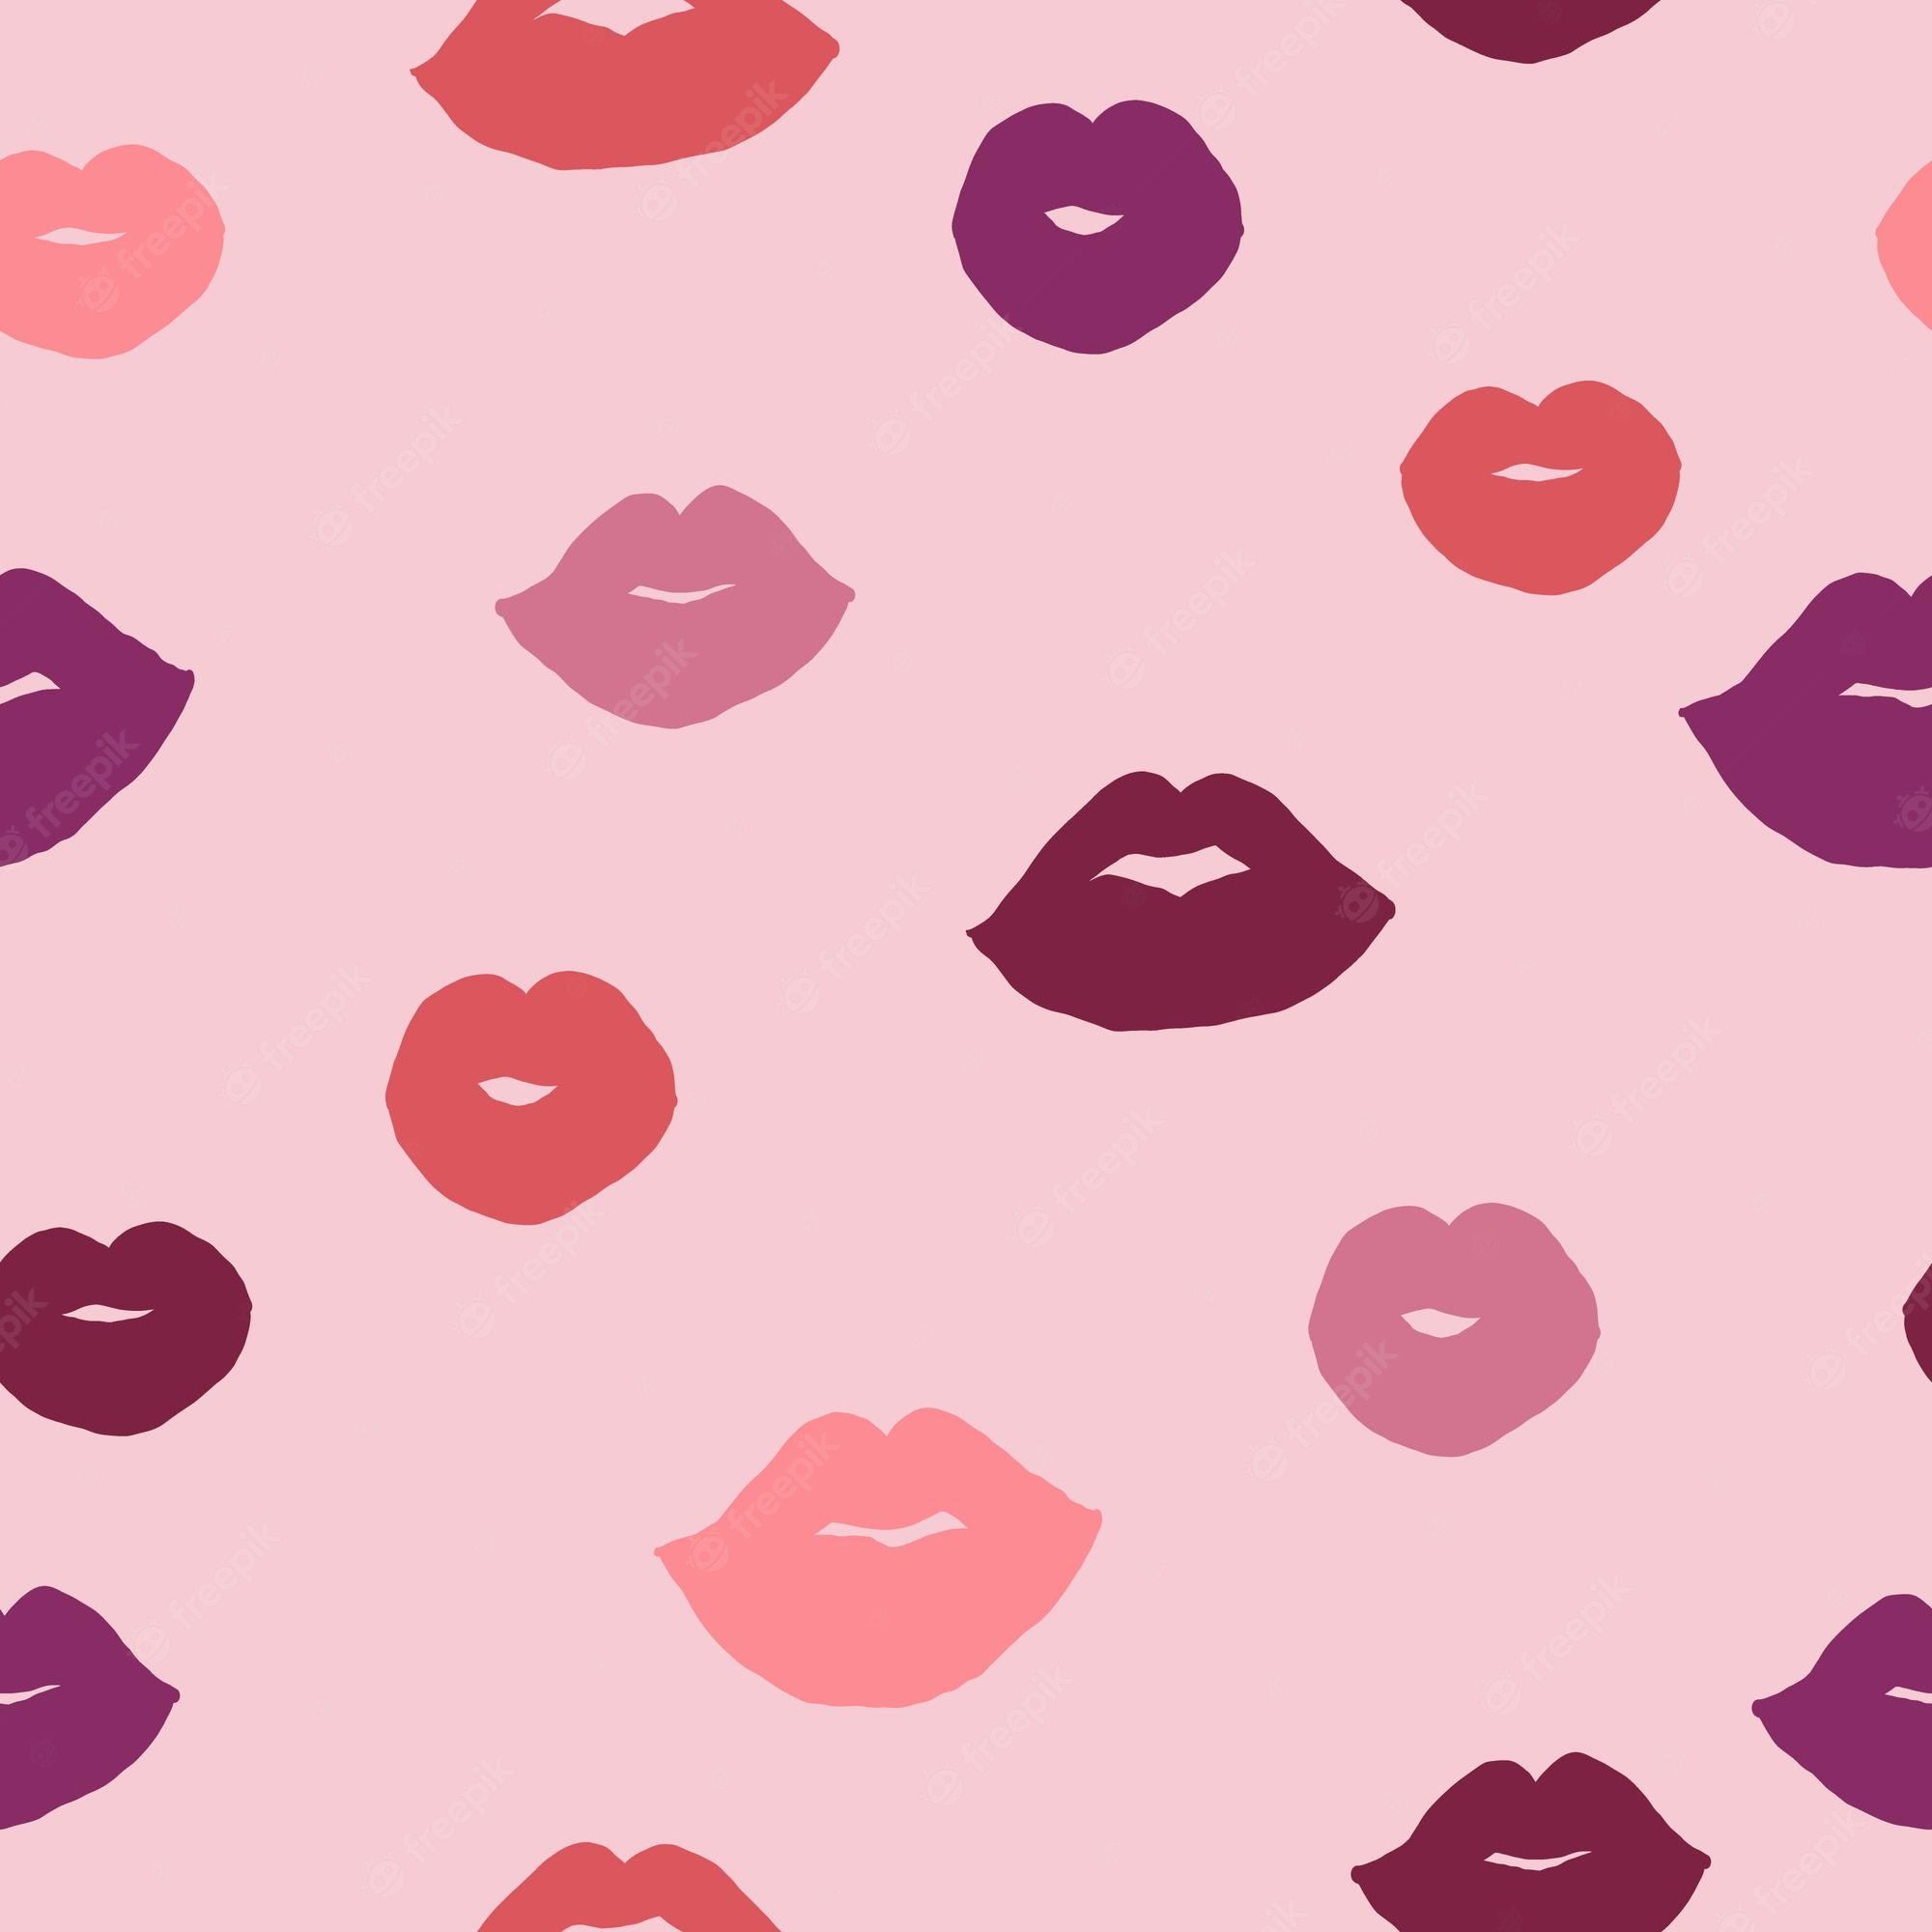 Lipstick wallpaper Image. Free Vectors, & PSD